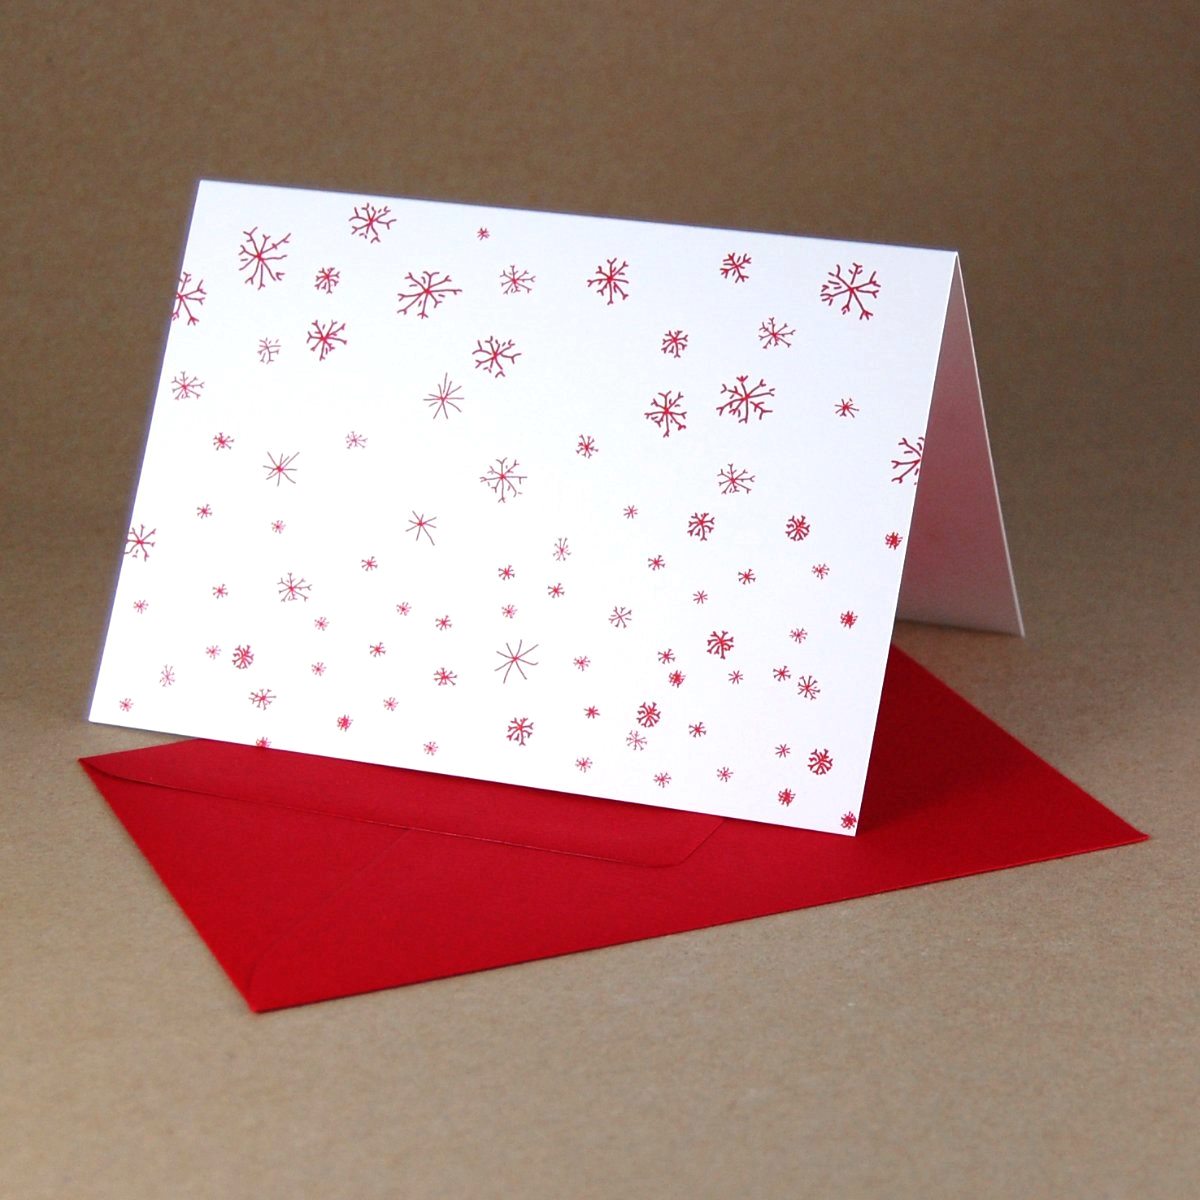 Schneeflocken, Winterkarten in reduziertem Design und roten Kuverts